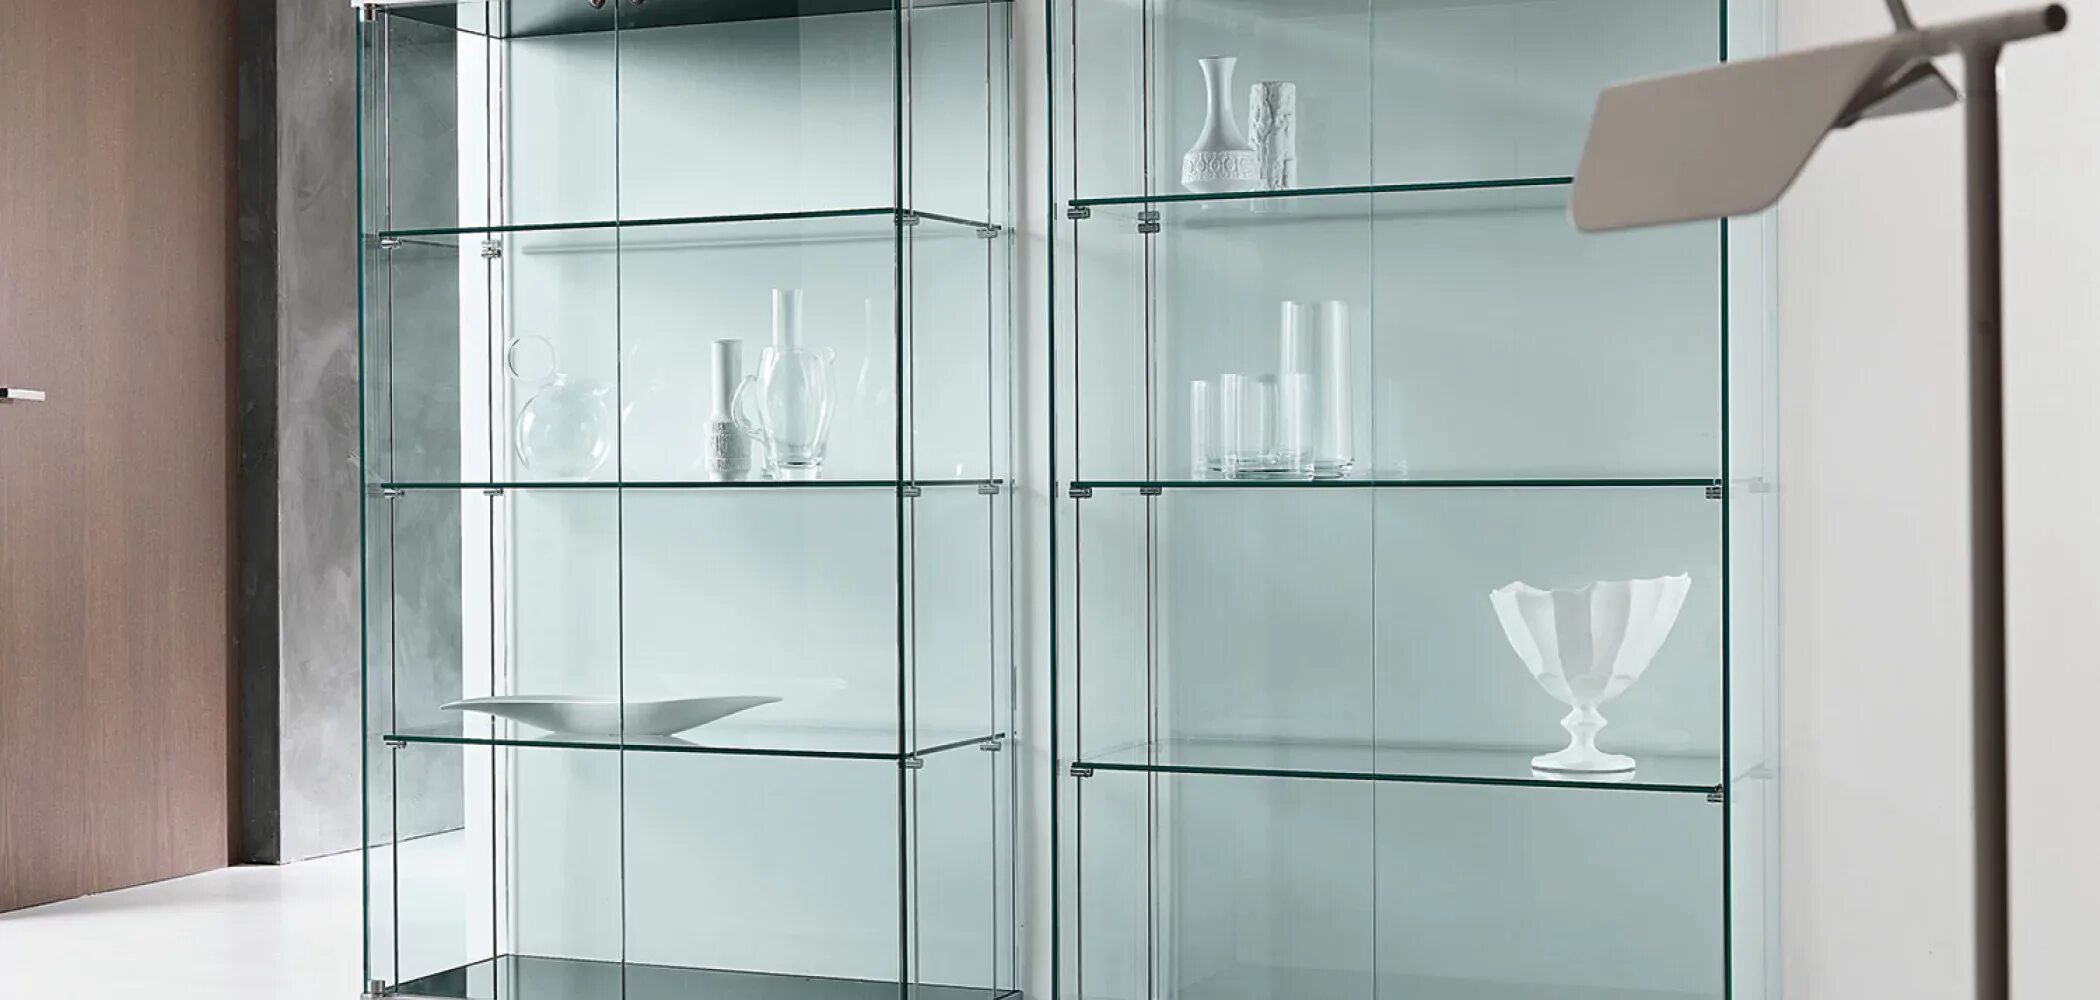 Выставочные шкафы. Шкаф для посуды / витрина Taylor. Cabinet / Showcase by Metner. SS 603 стеклянная витрина. Витрина Glass Showcase. Стеклянный стеллаж.